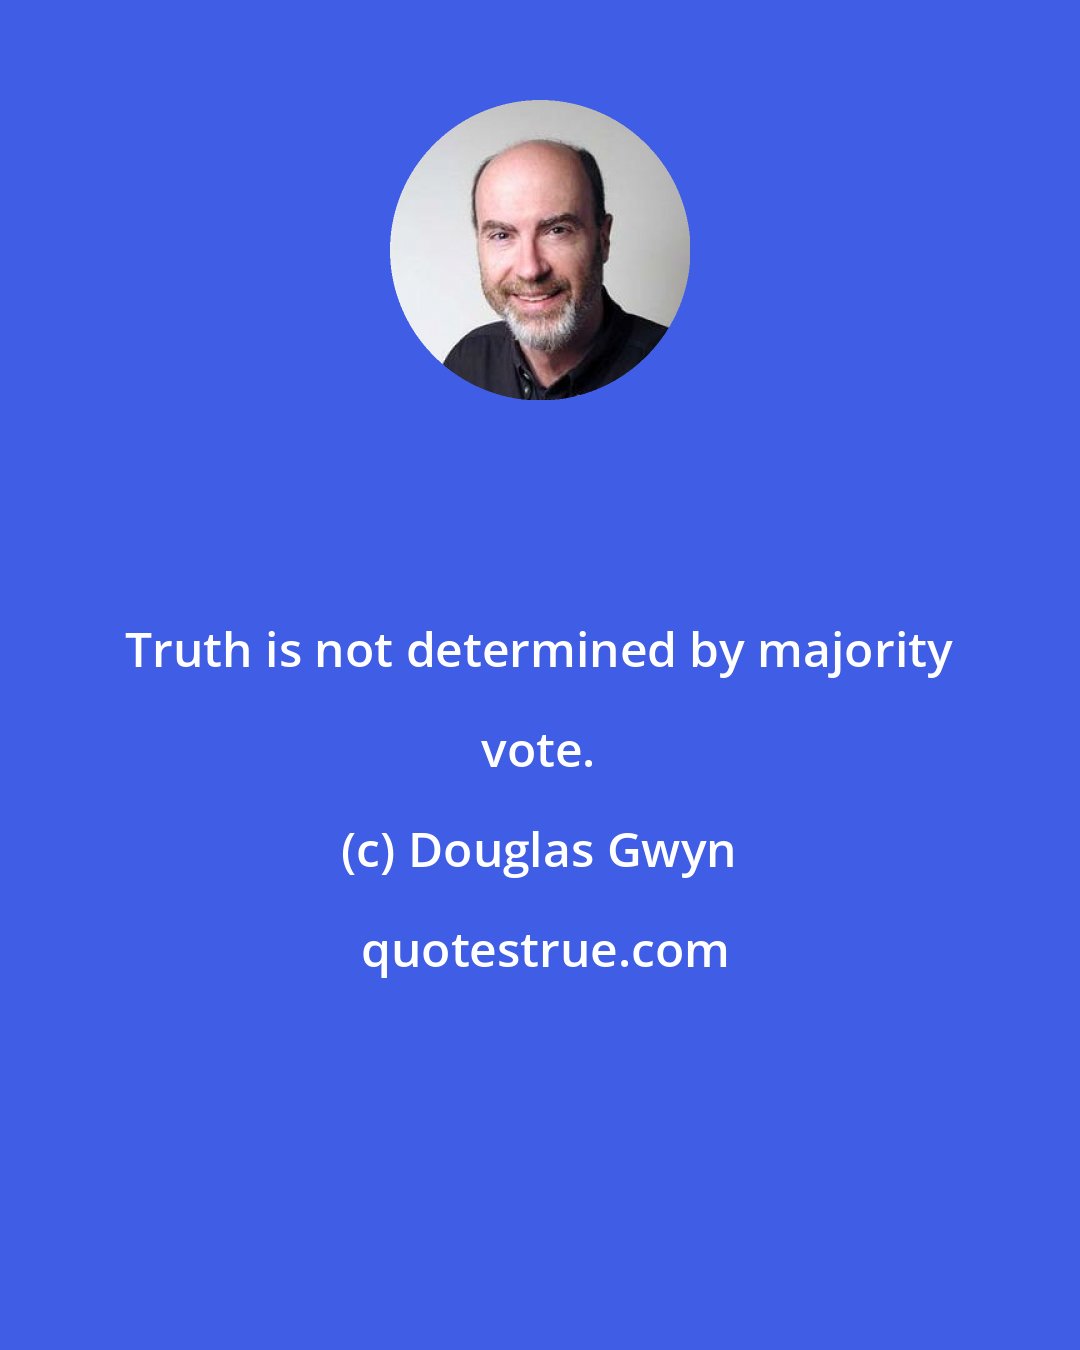 Douglas Gwyn: Truth is not determined by majority vote.